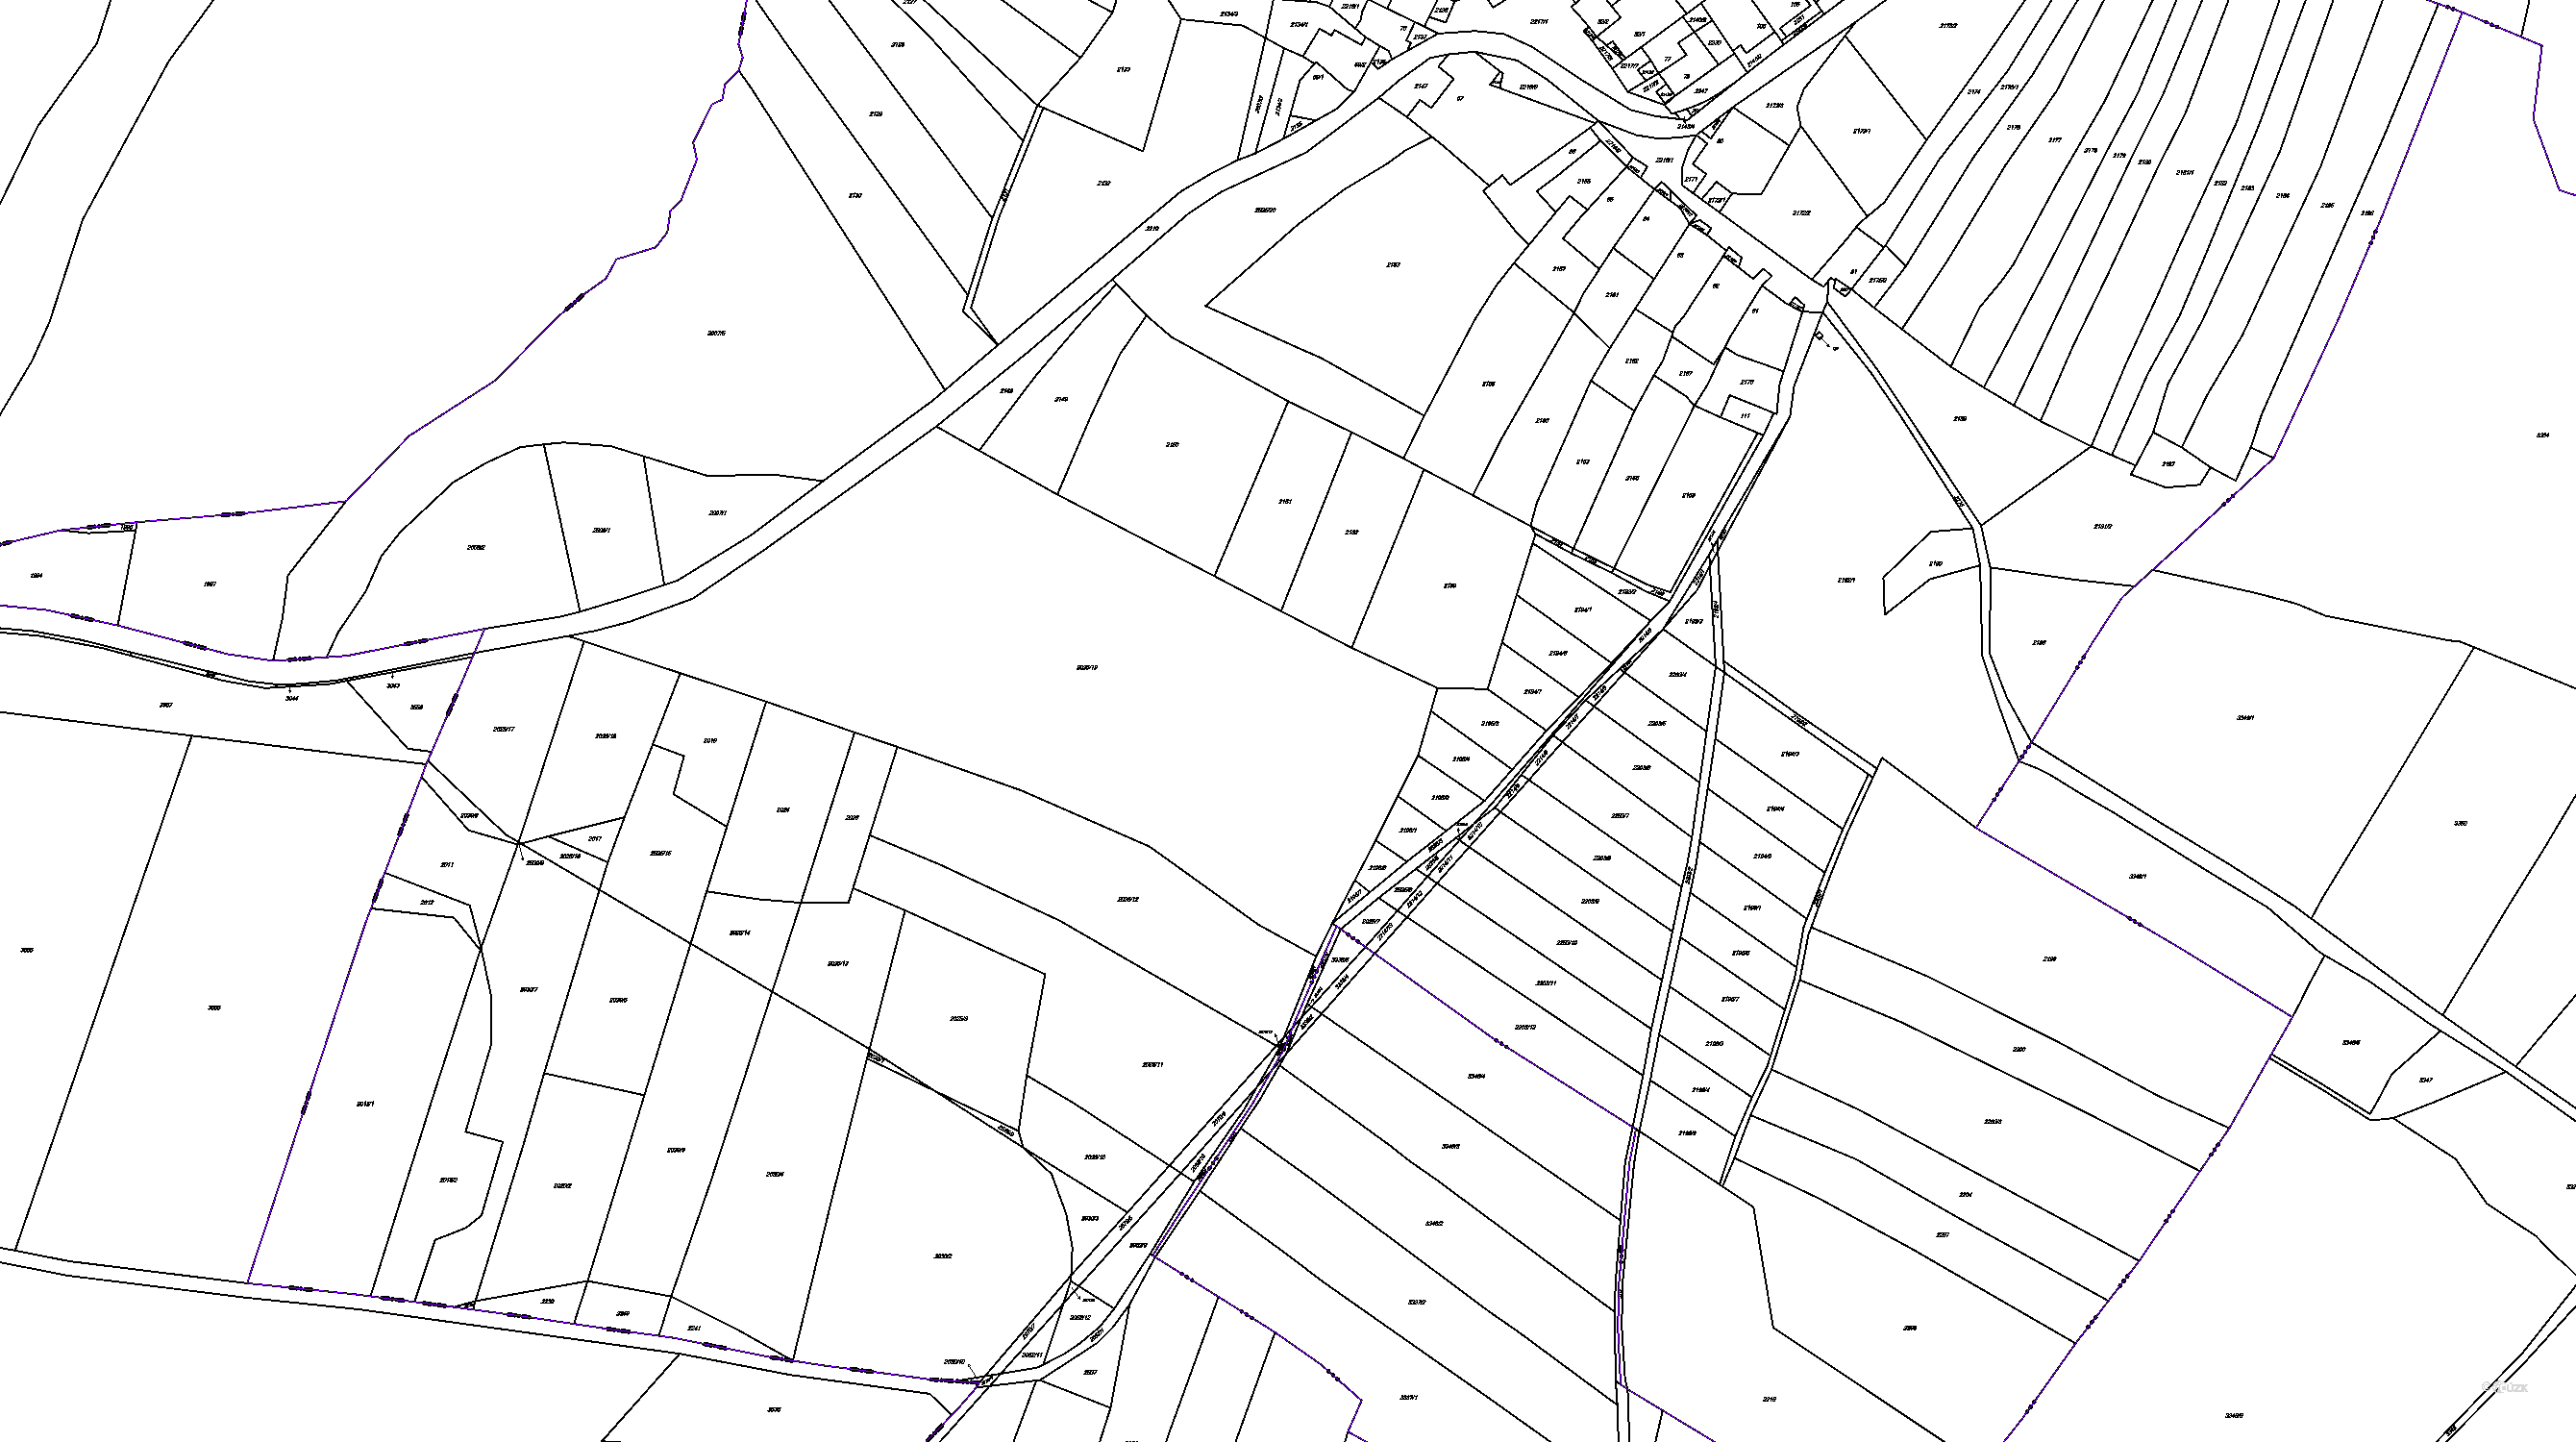 Katastrální mapa pozemků a čísla parcel Hory u Předína